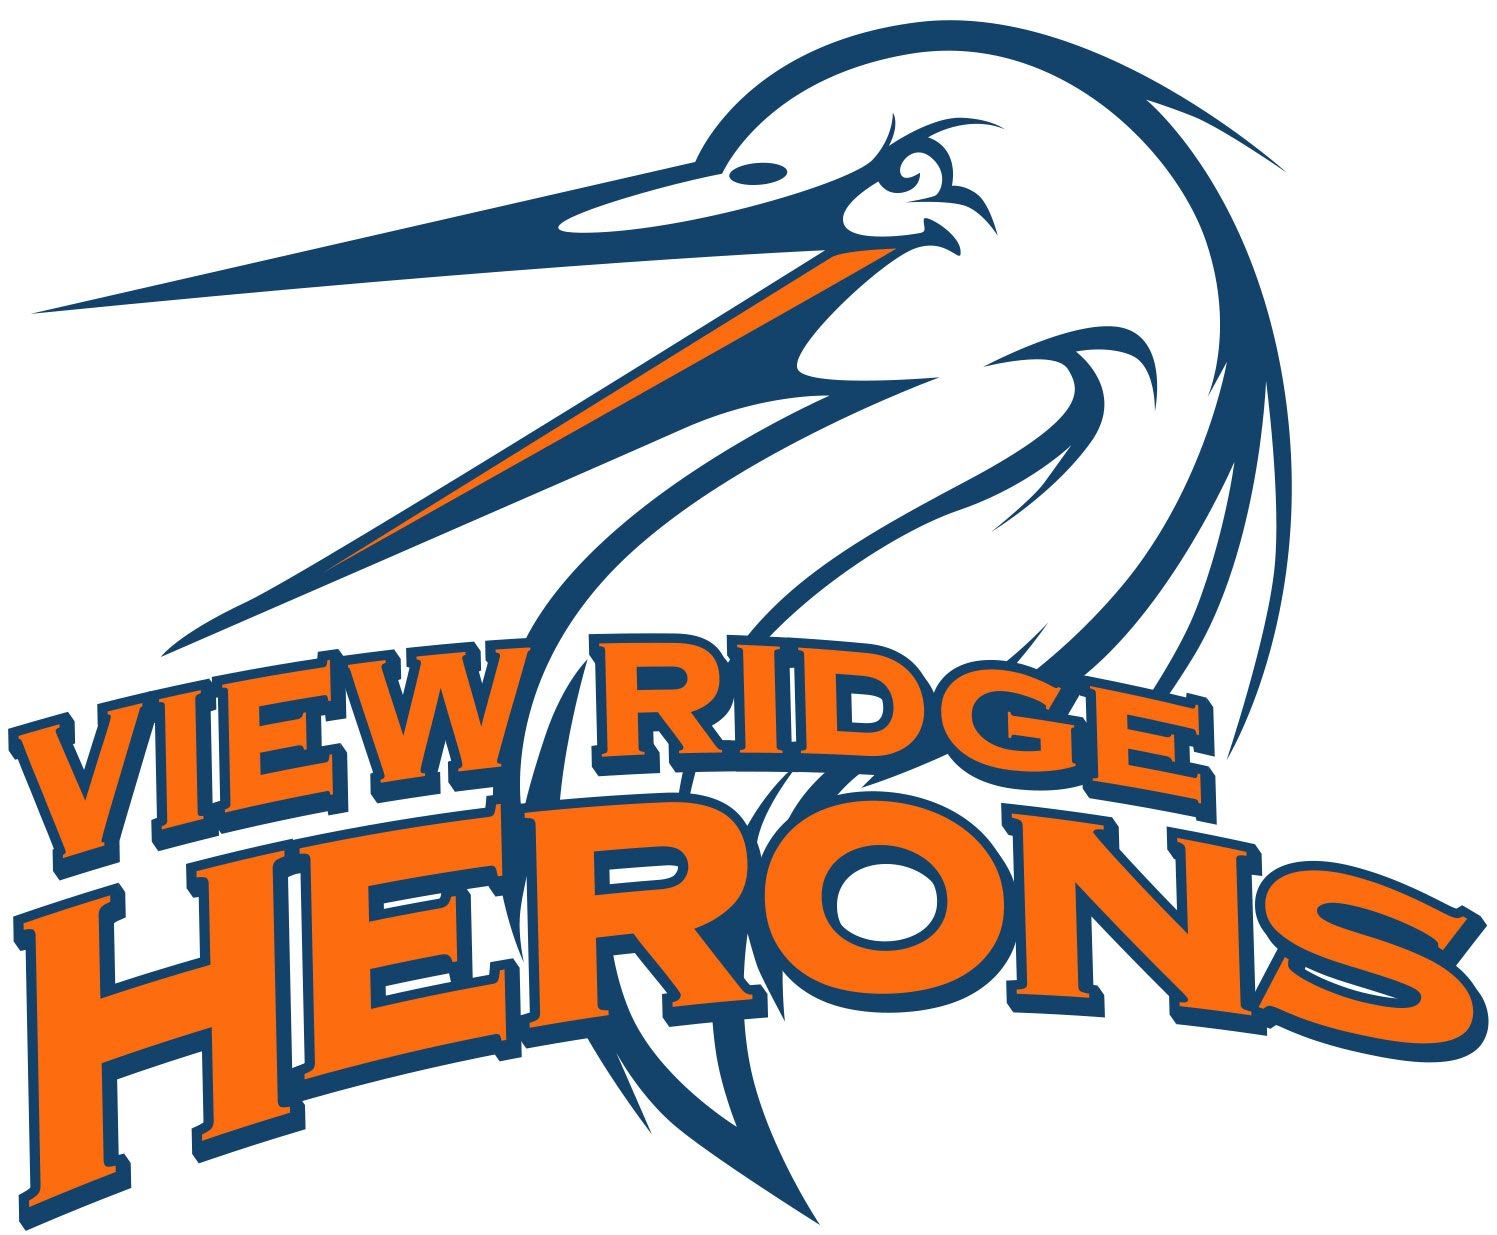 View Ridge Herons logo